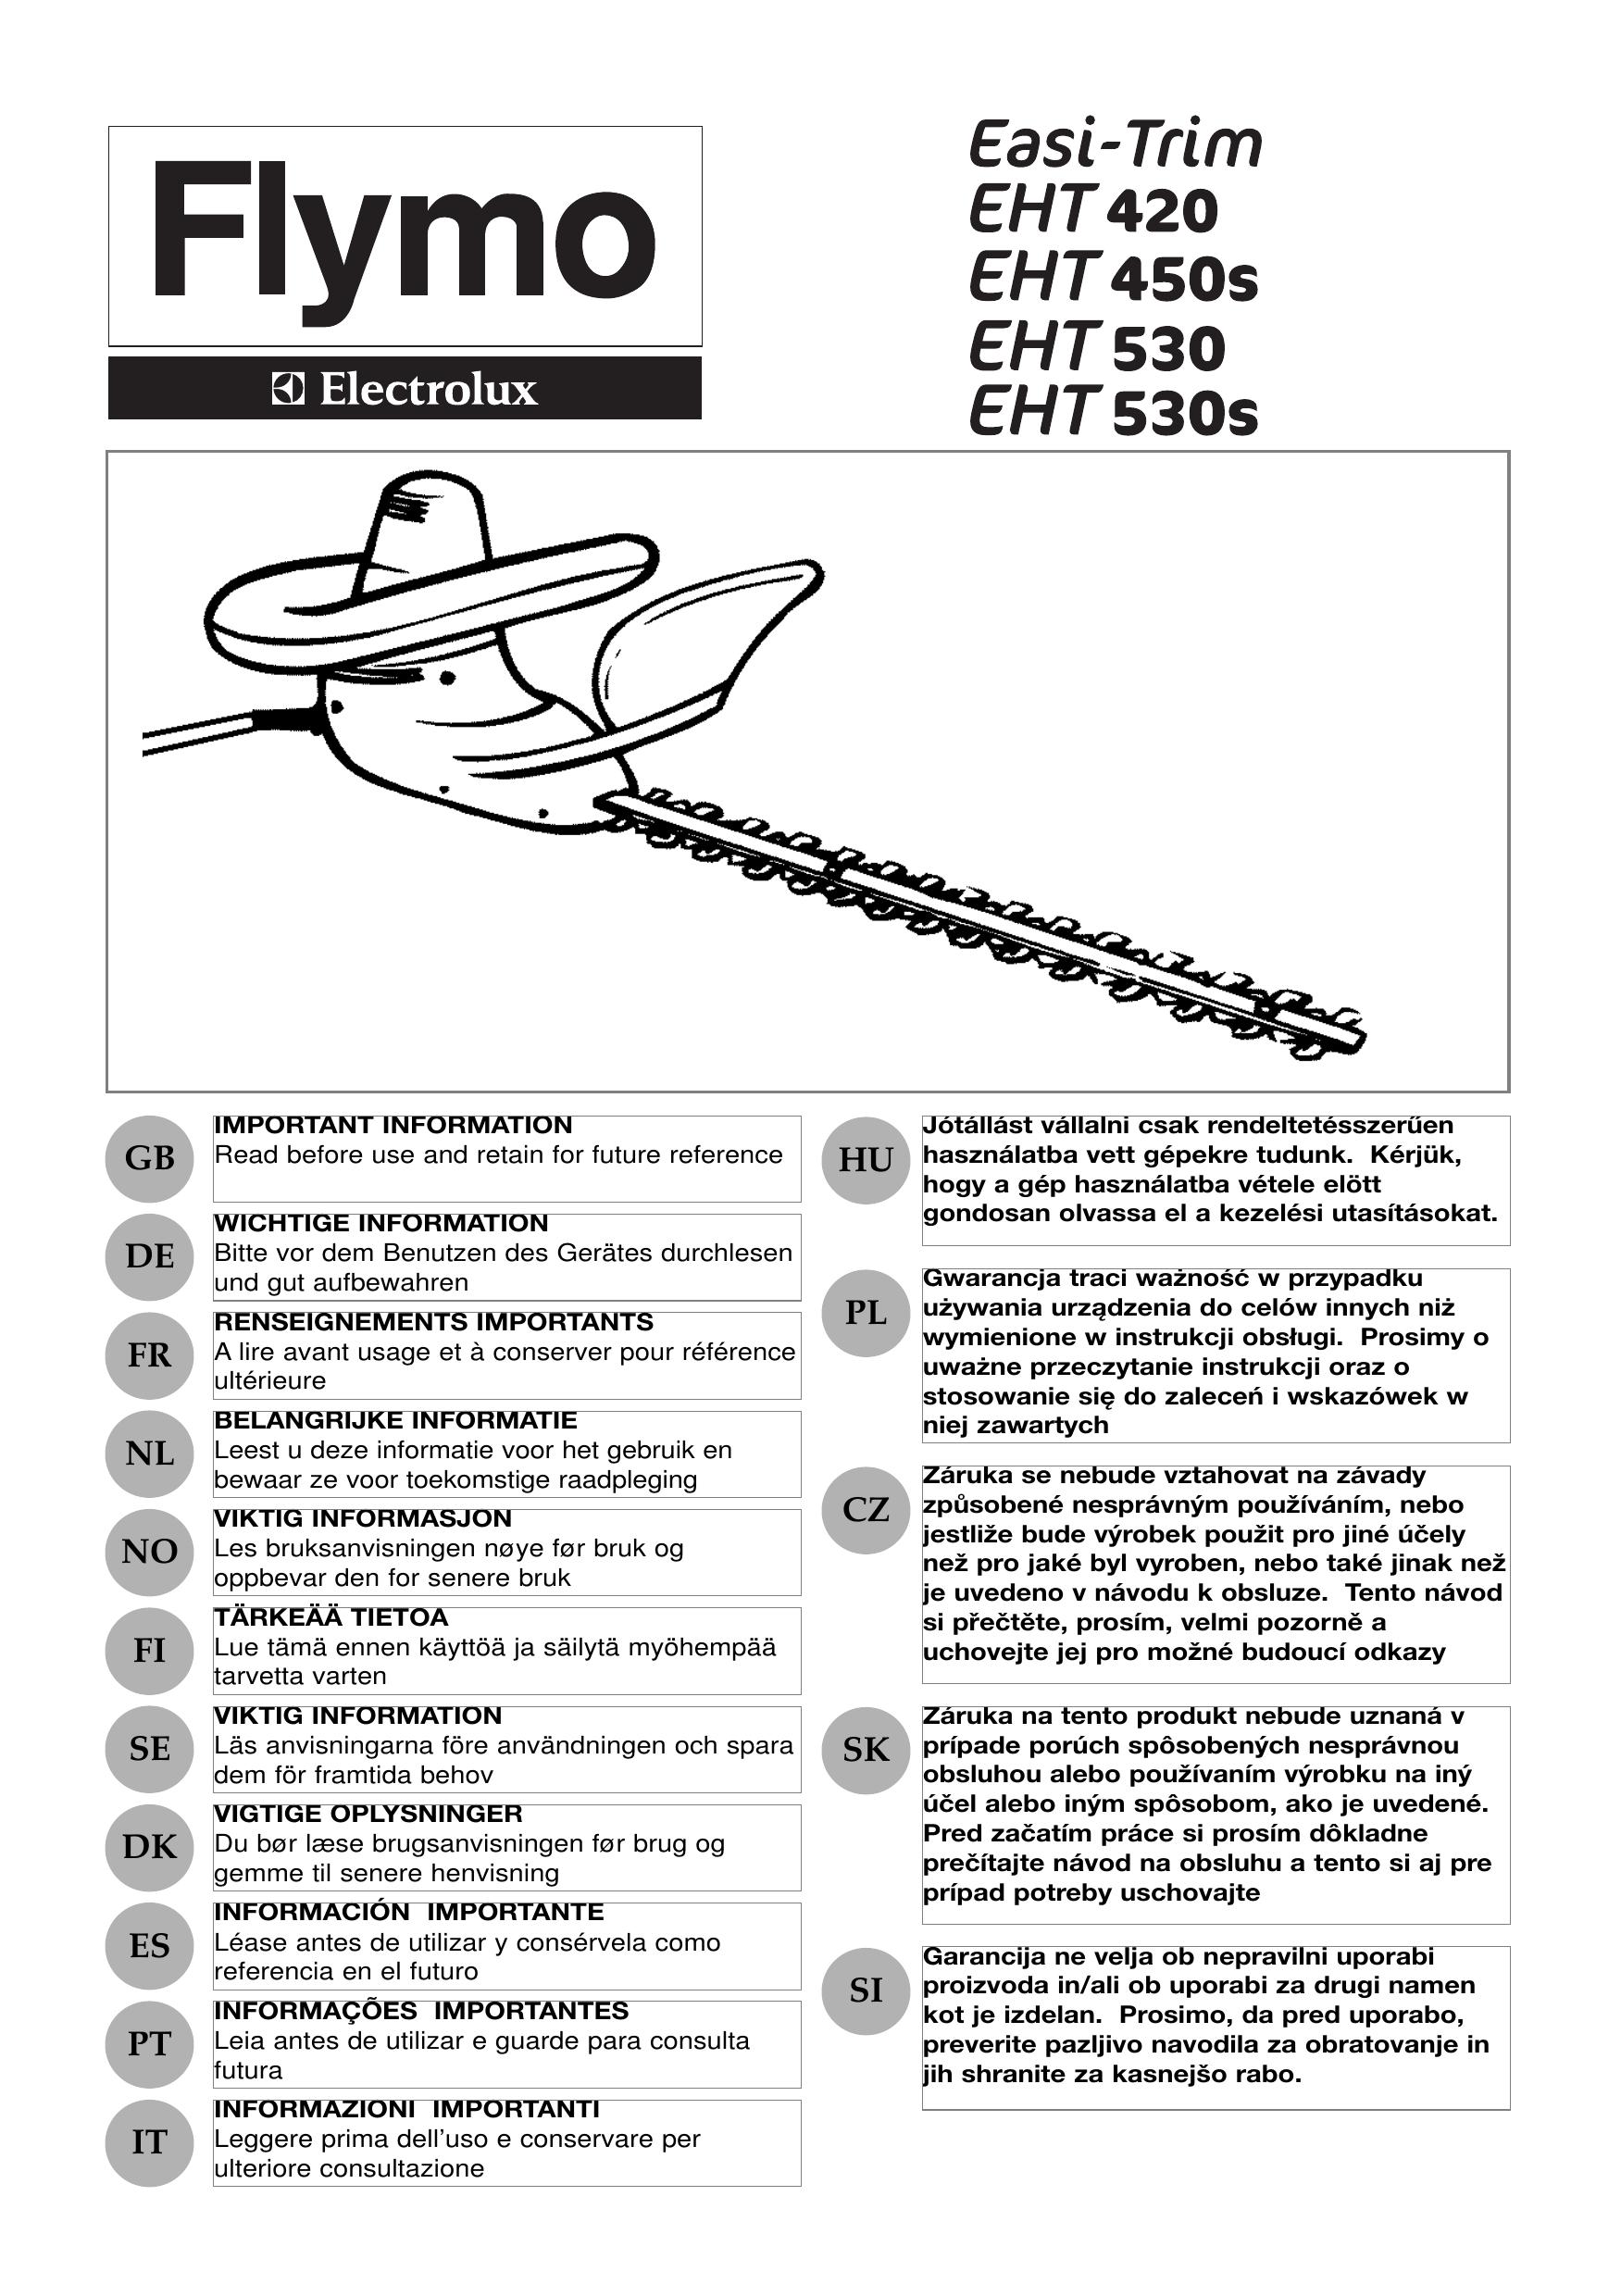 Flymo EHT 450s Trimmer User Manual